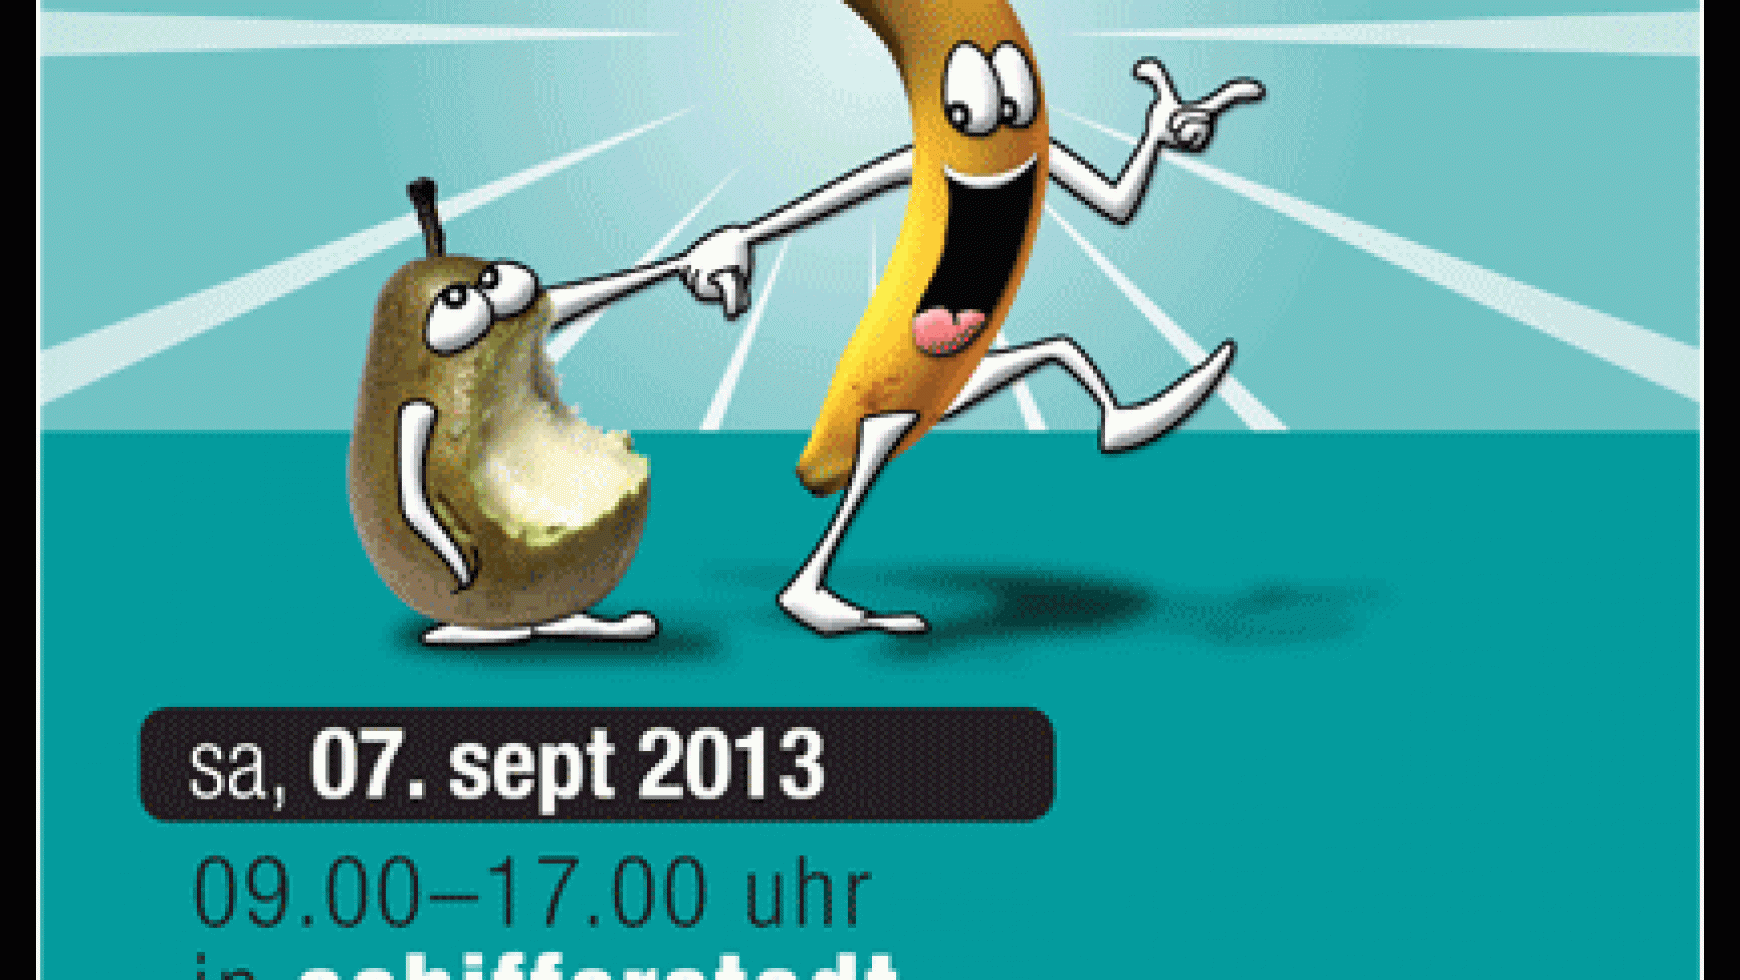 10. Aktionstag "Lust auf fit" am 7. September in Schifferstadt